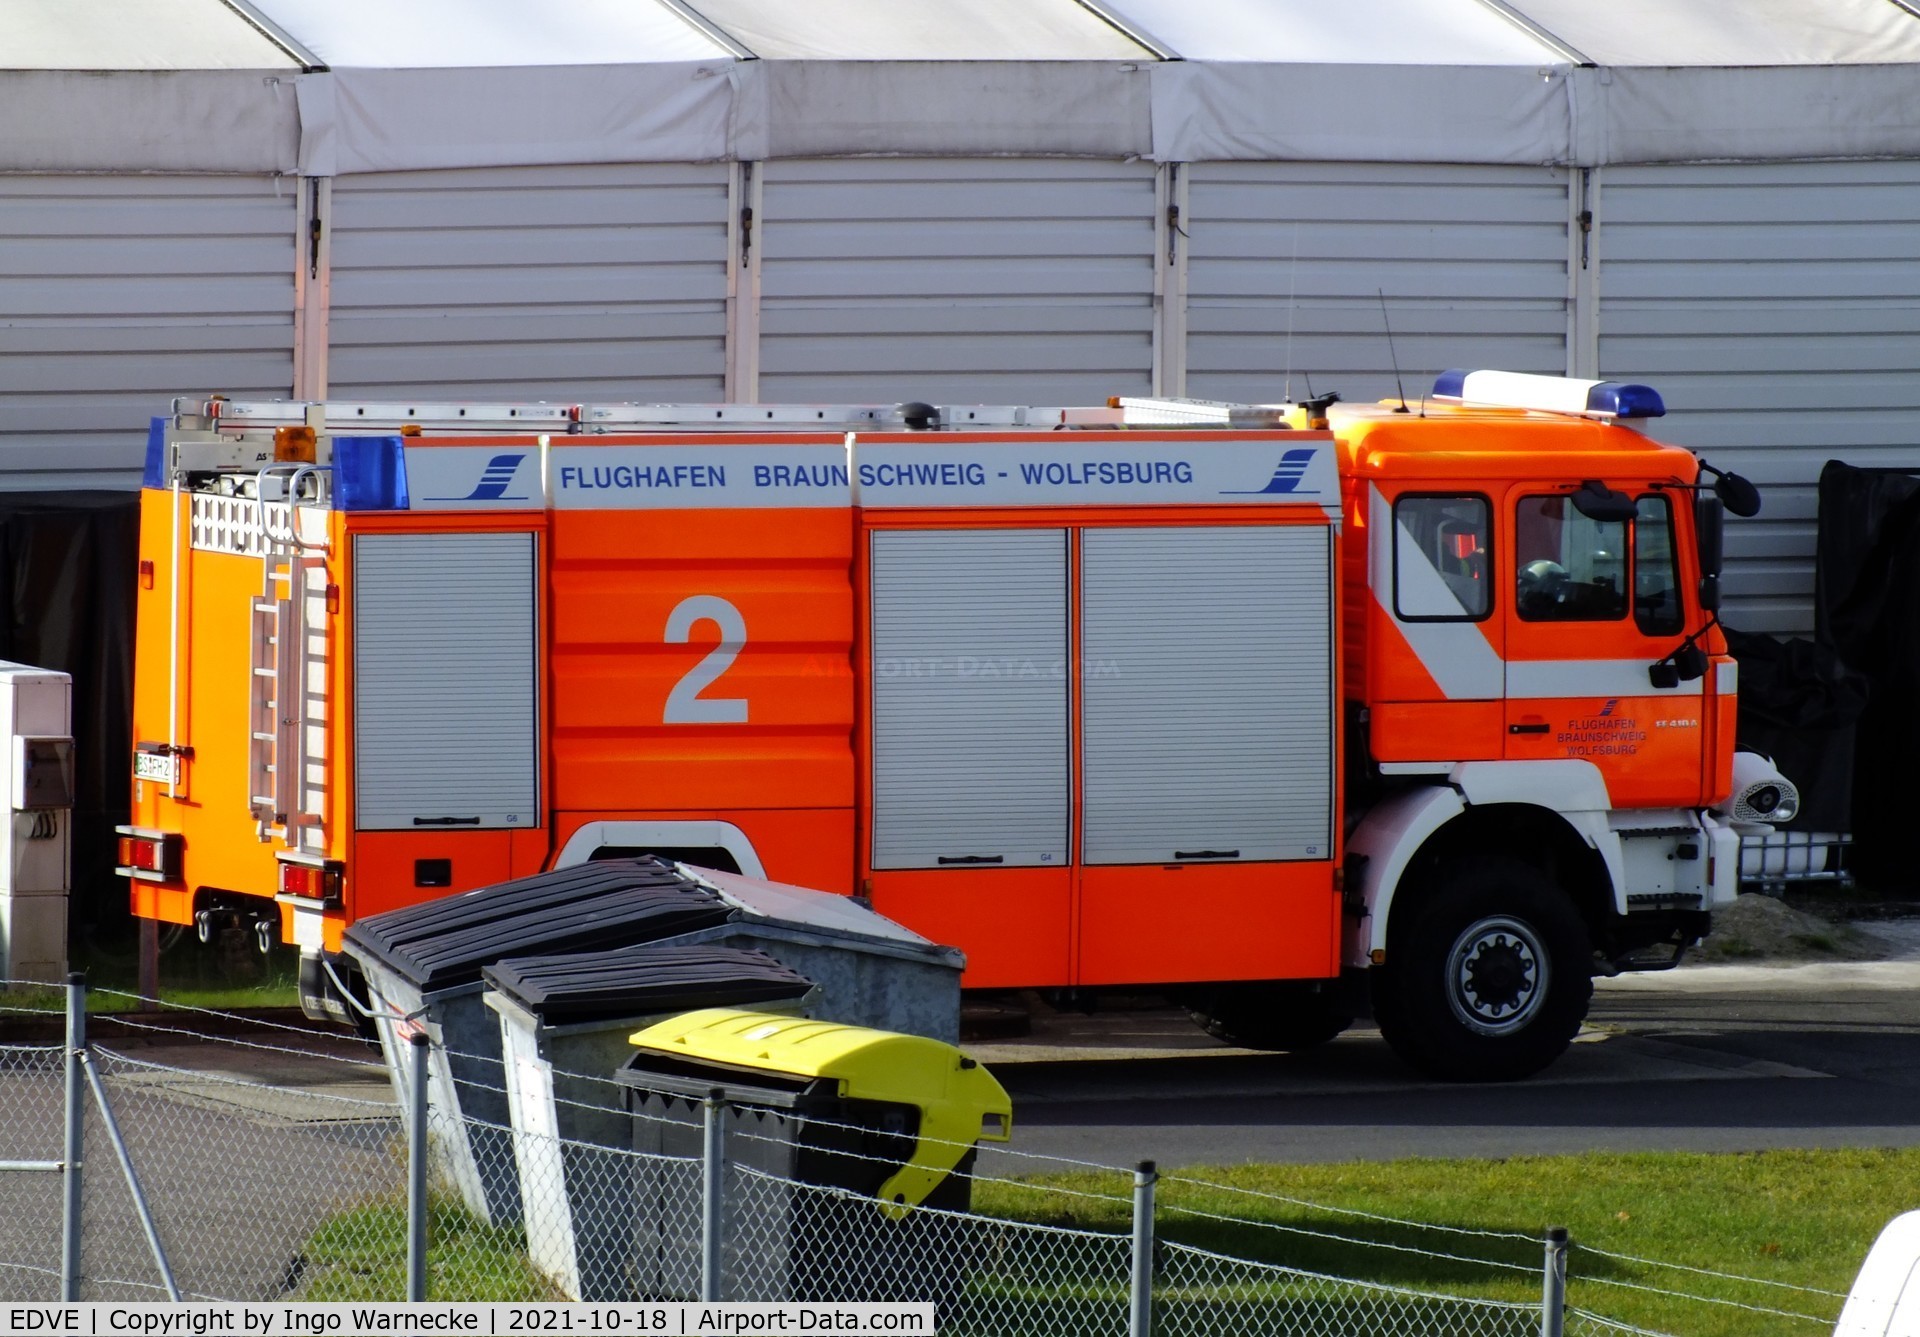 Braunschweig-Wolfsburg Regional Airport, Braunschweig, Lower Saxony Germany (EDVE) - airport fire truck at Braunschweig-Waggum airport